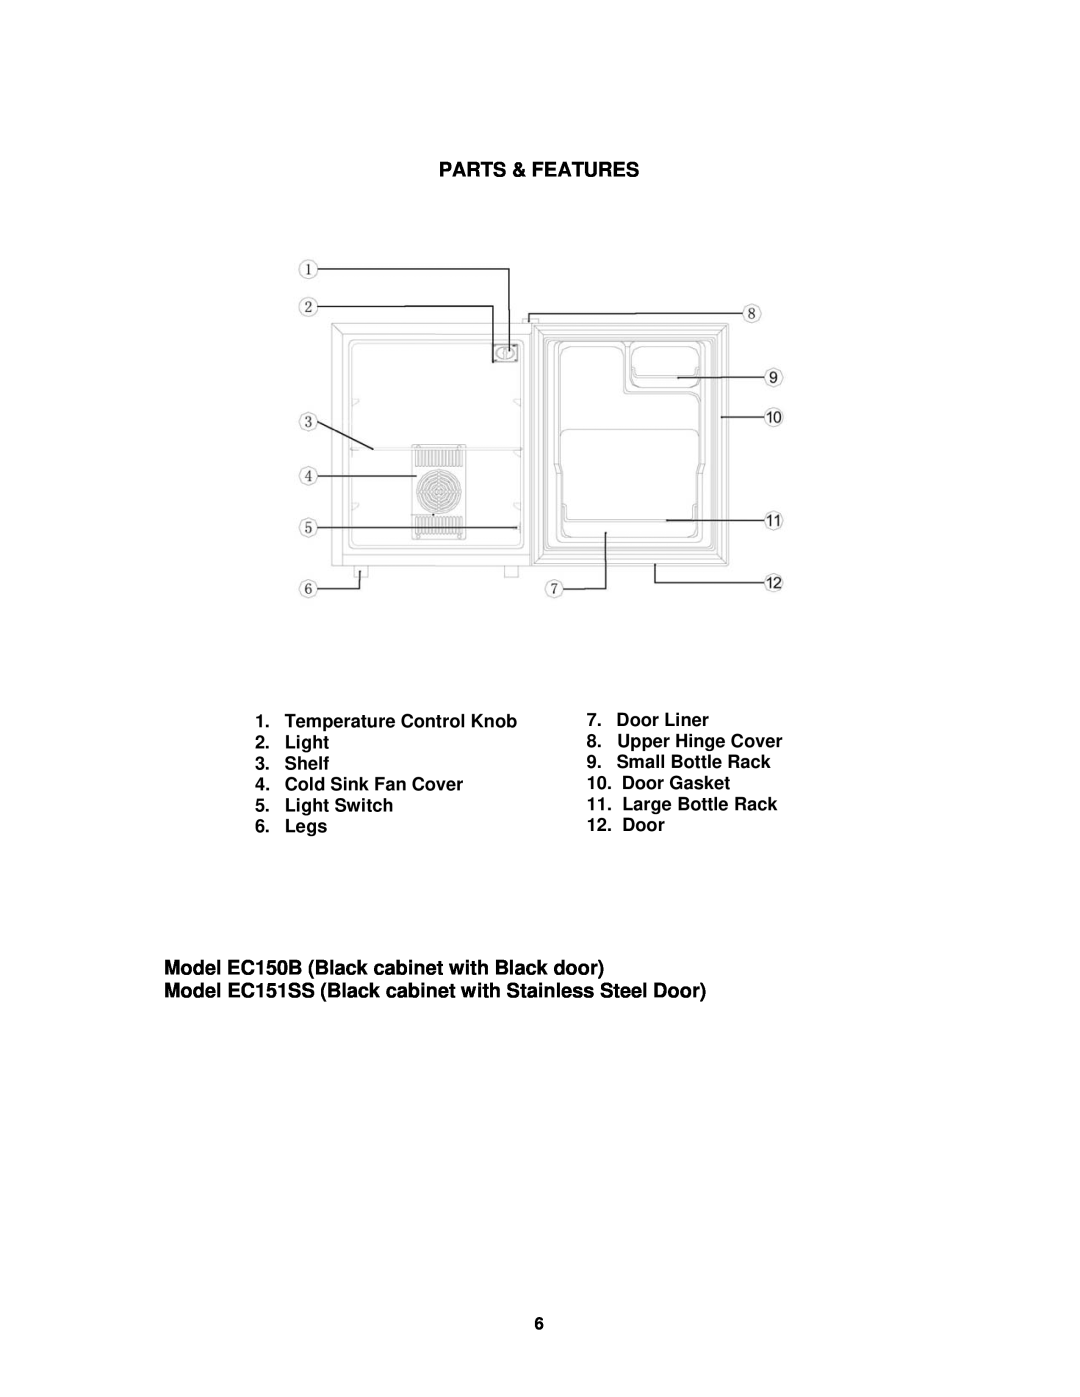 Avanti EC151SS instruction manual Parts & Features, Model EC150B Black cabinet with Black door 